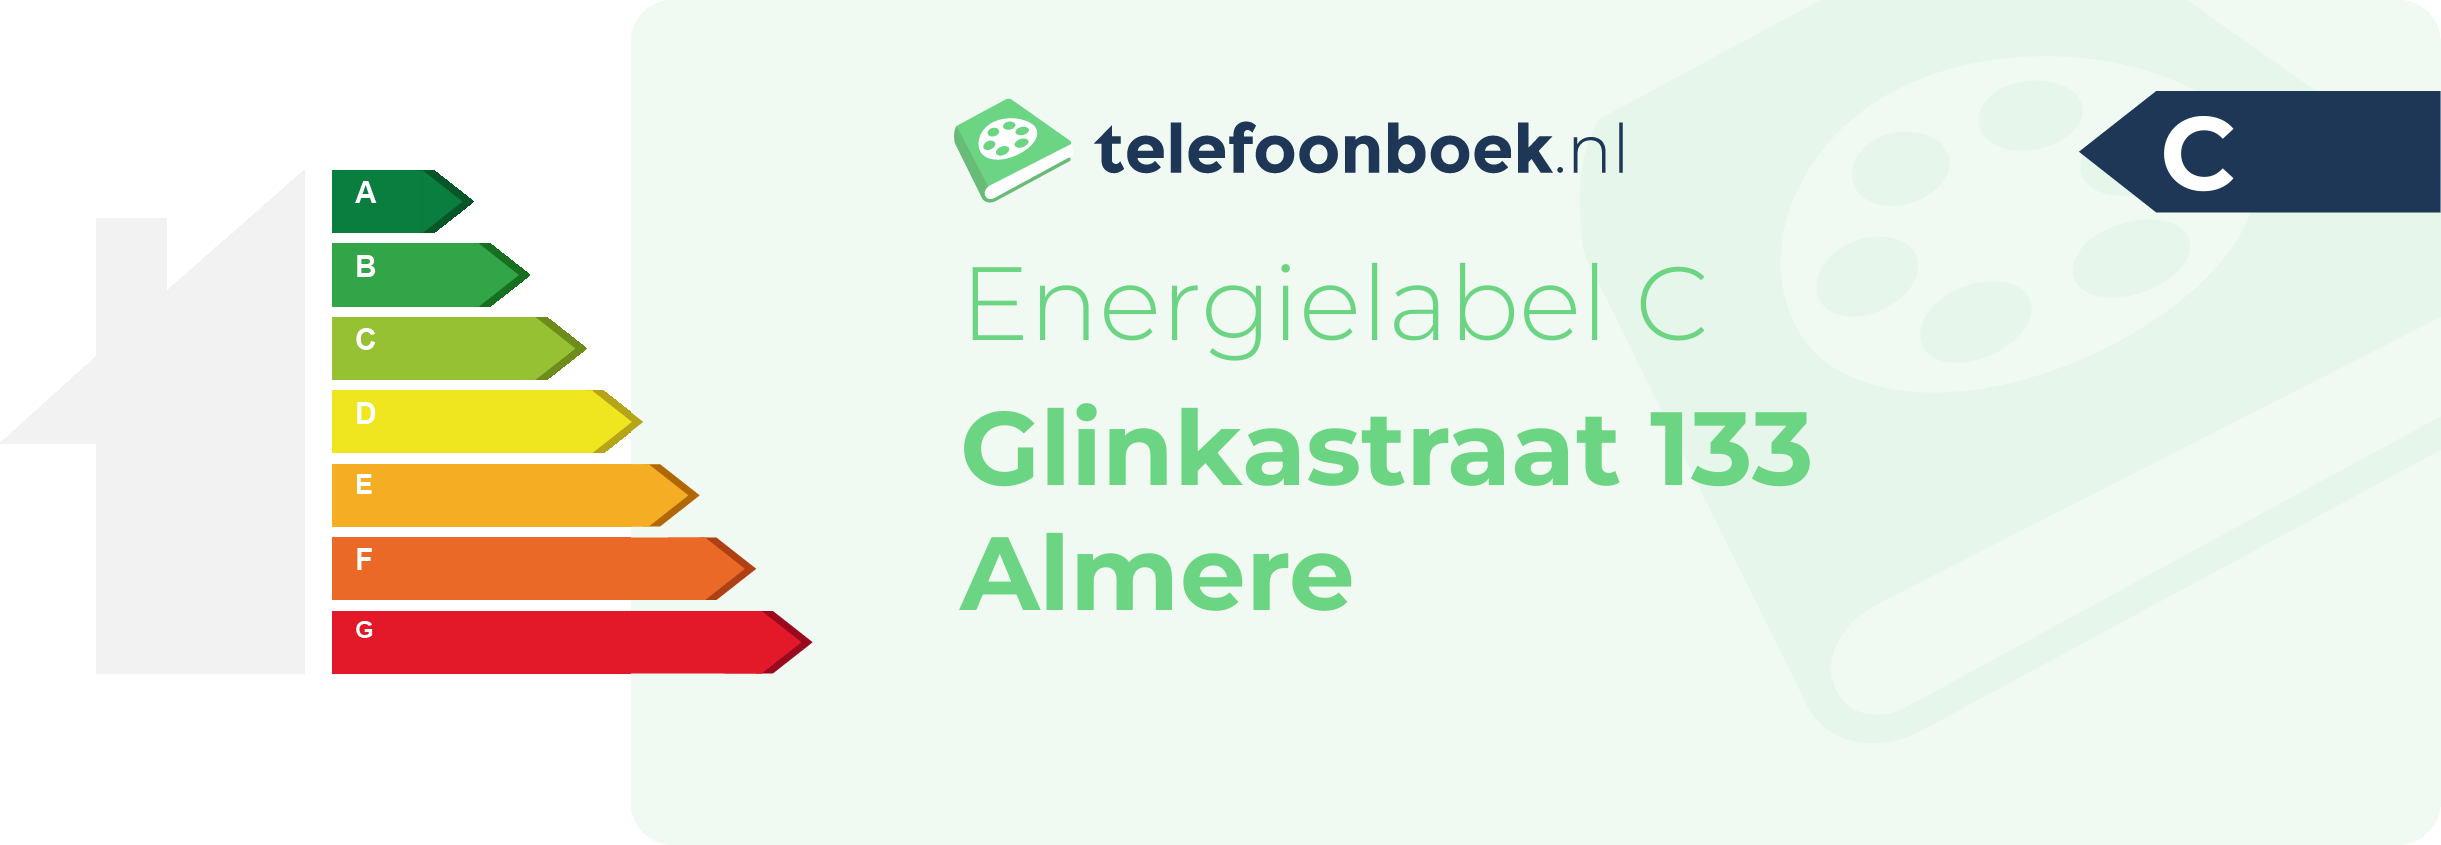 Energielabel Glinkastraat 133 Almere